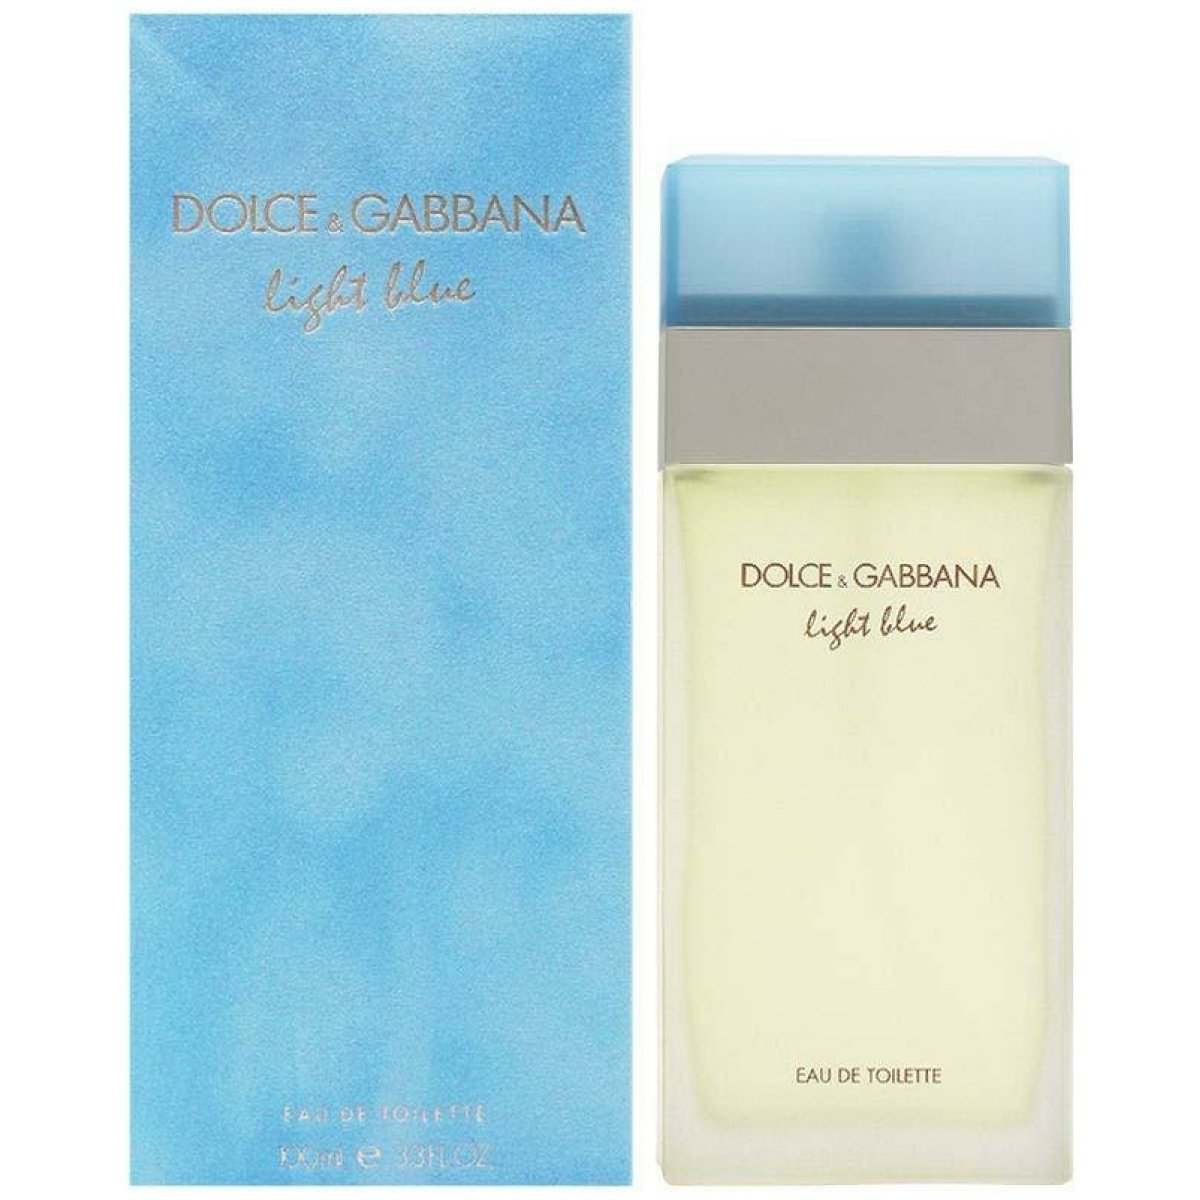 Dolce and Gabbana (D&G) Light Blue EDT Perfume For Women 100ml